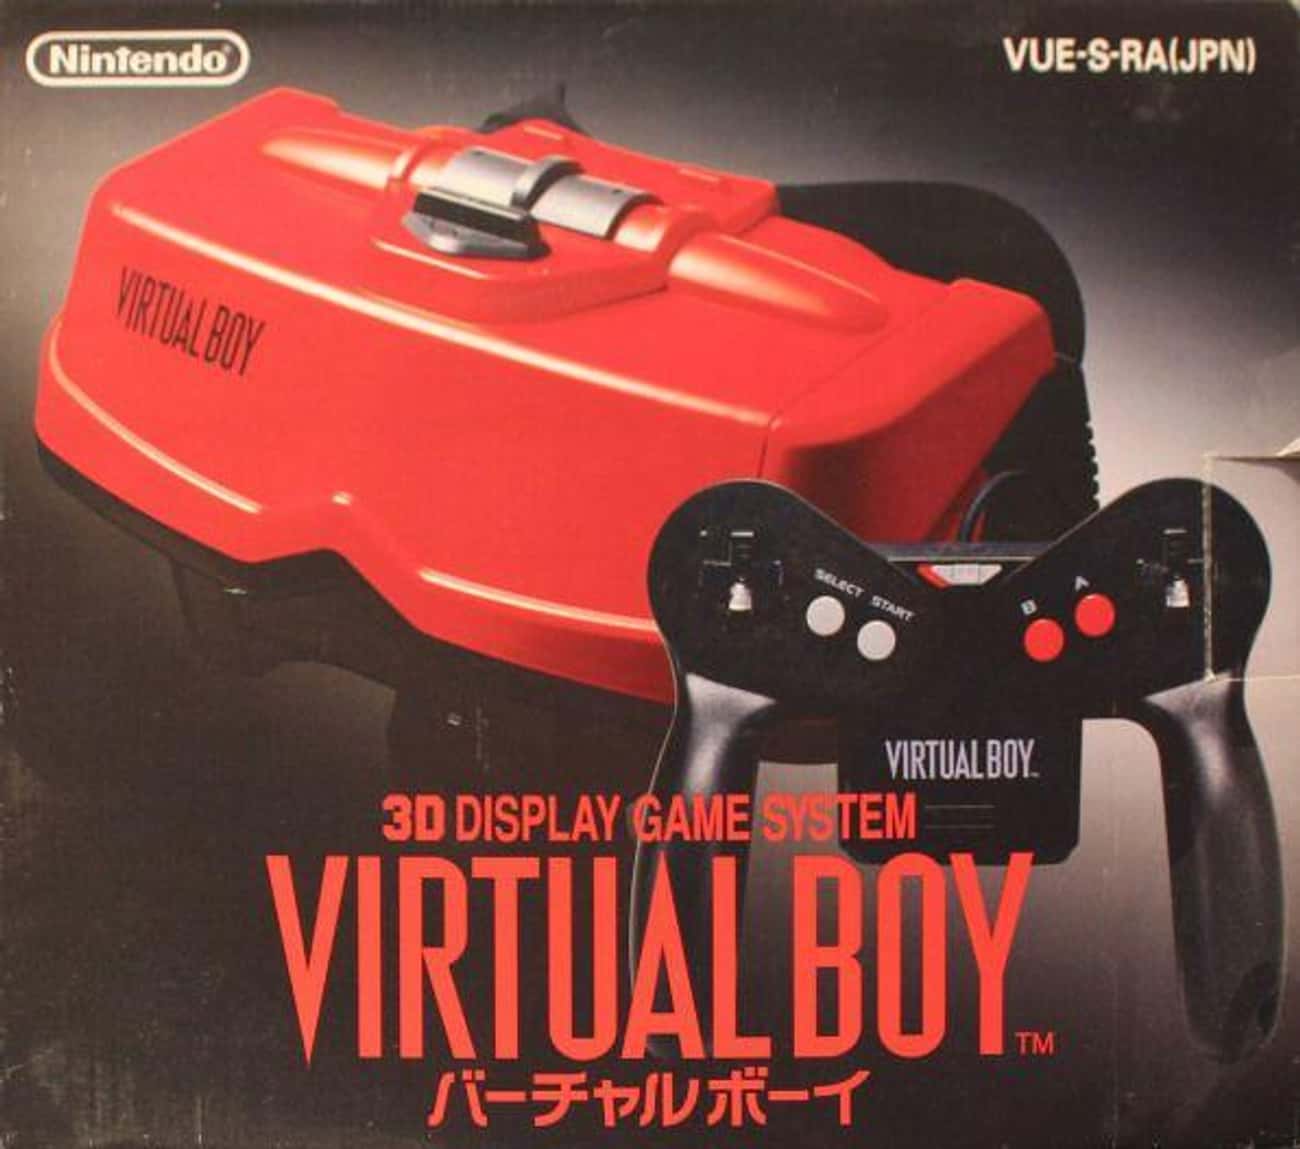  Nintendo Virtual Boy 